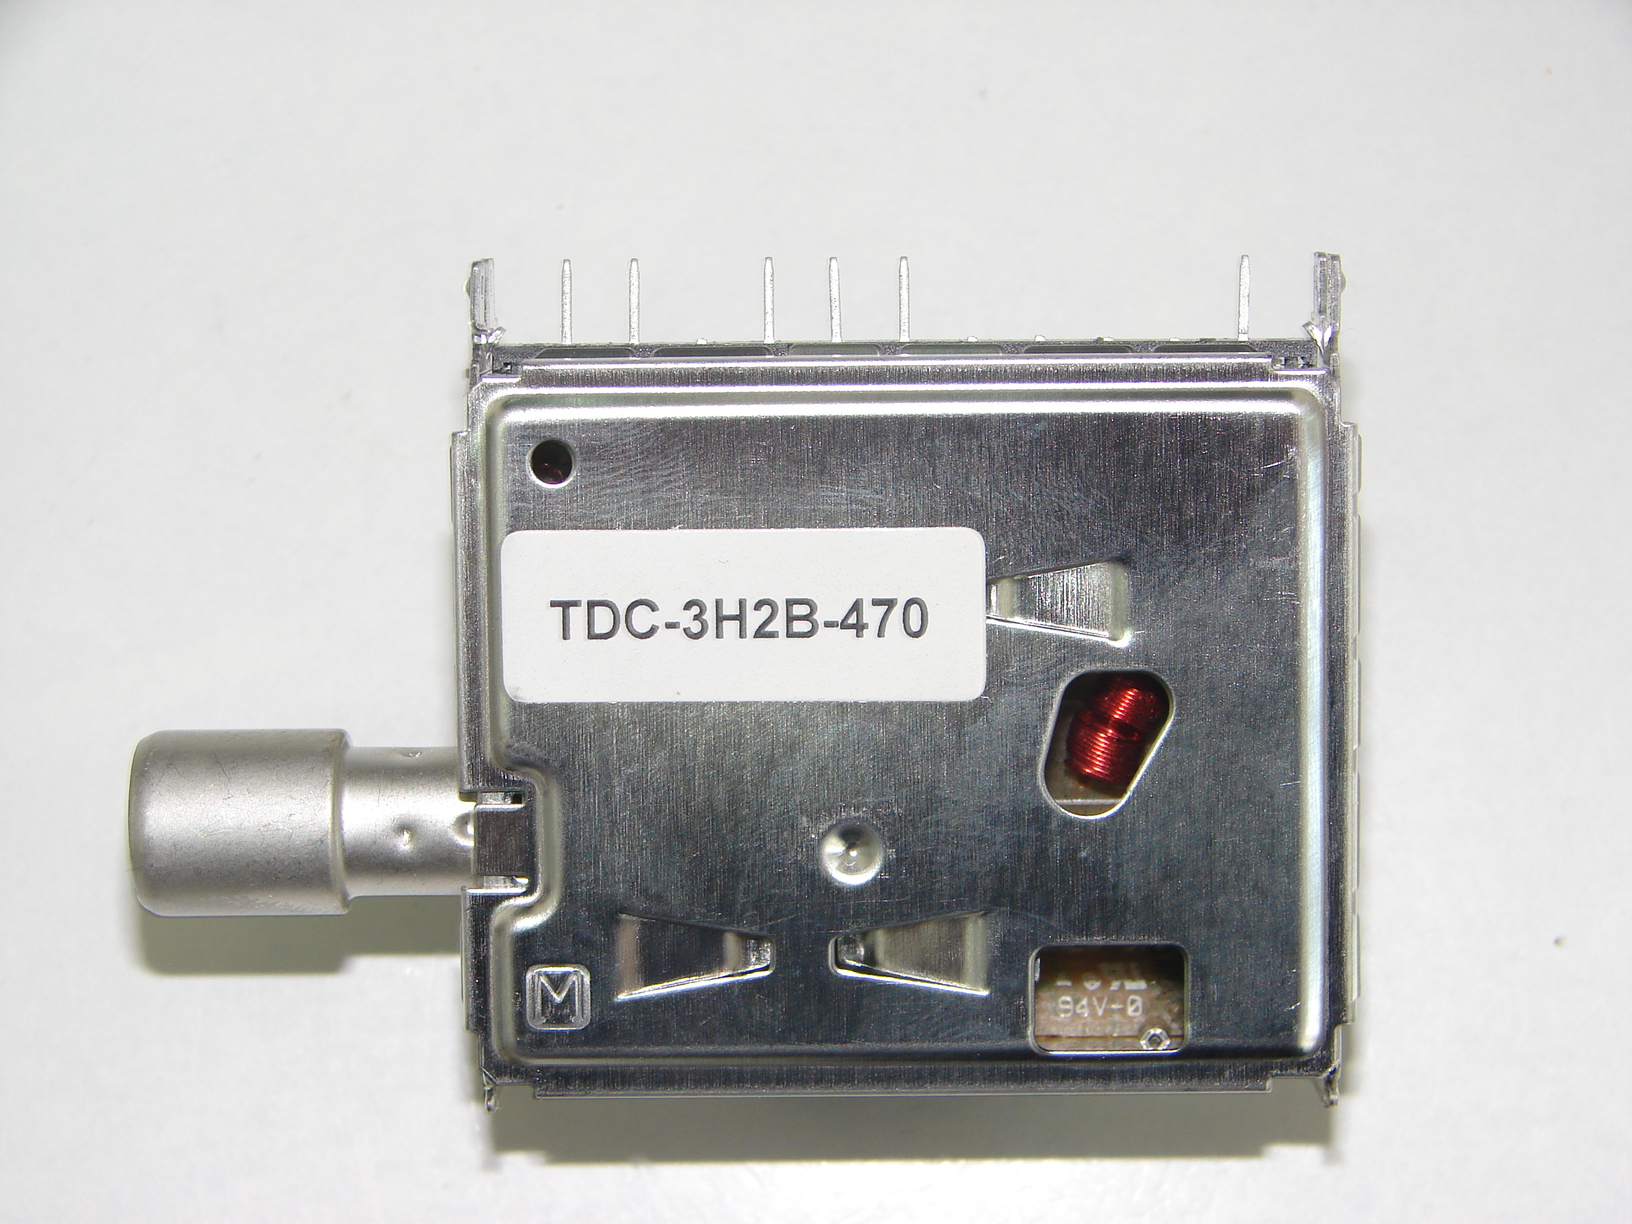 TDC-3H2B-470